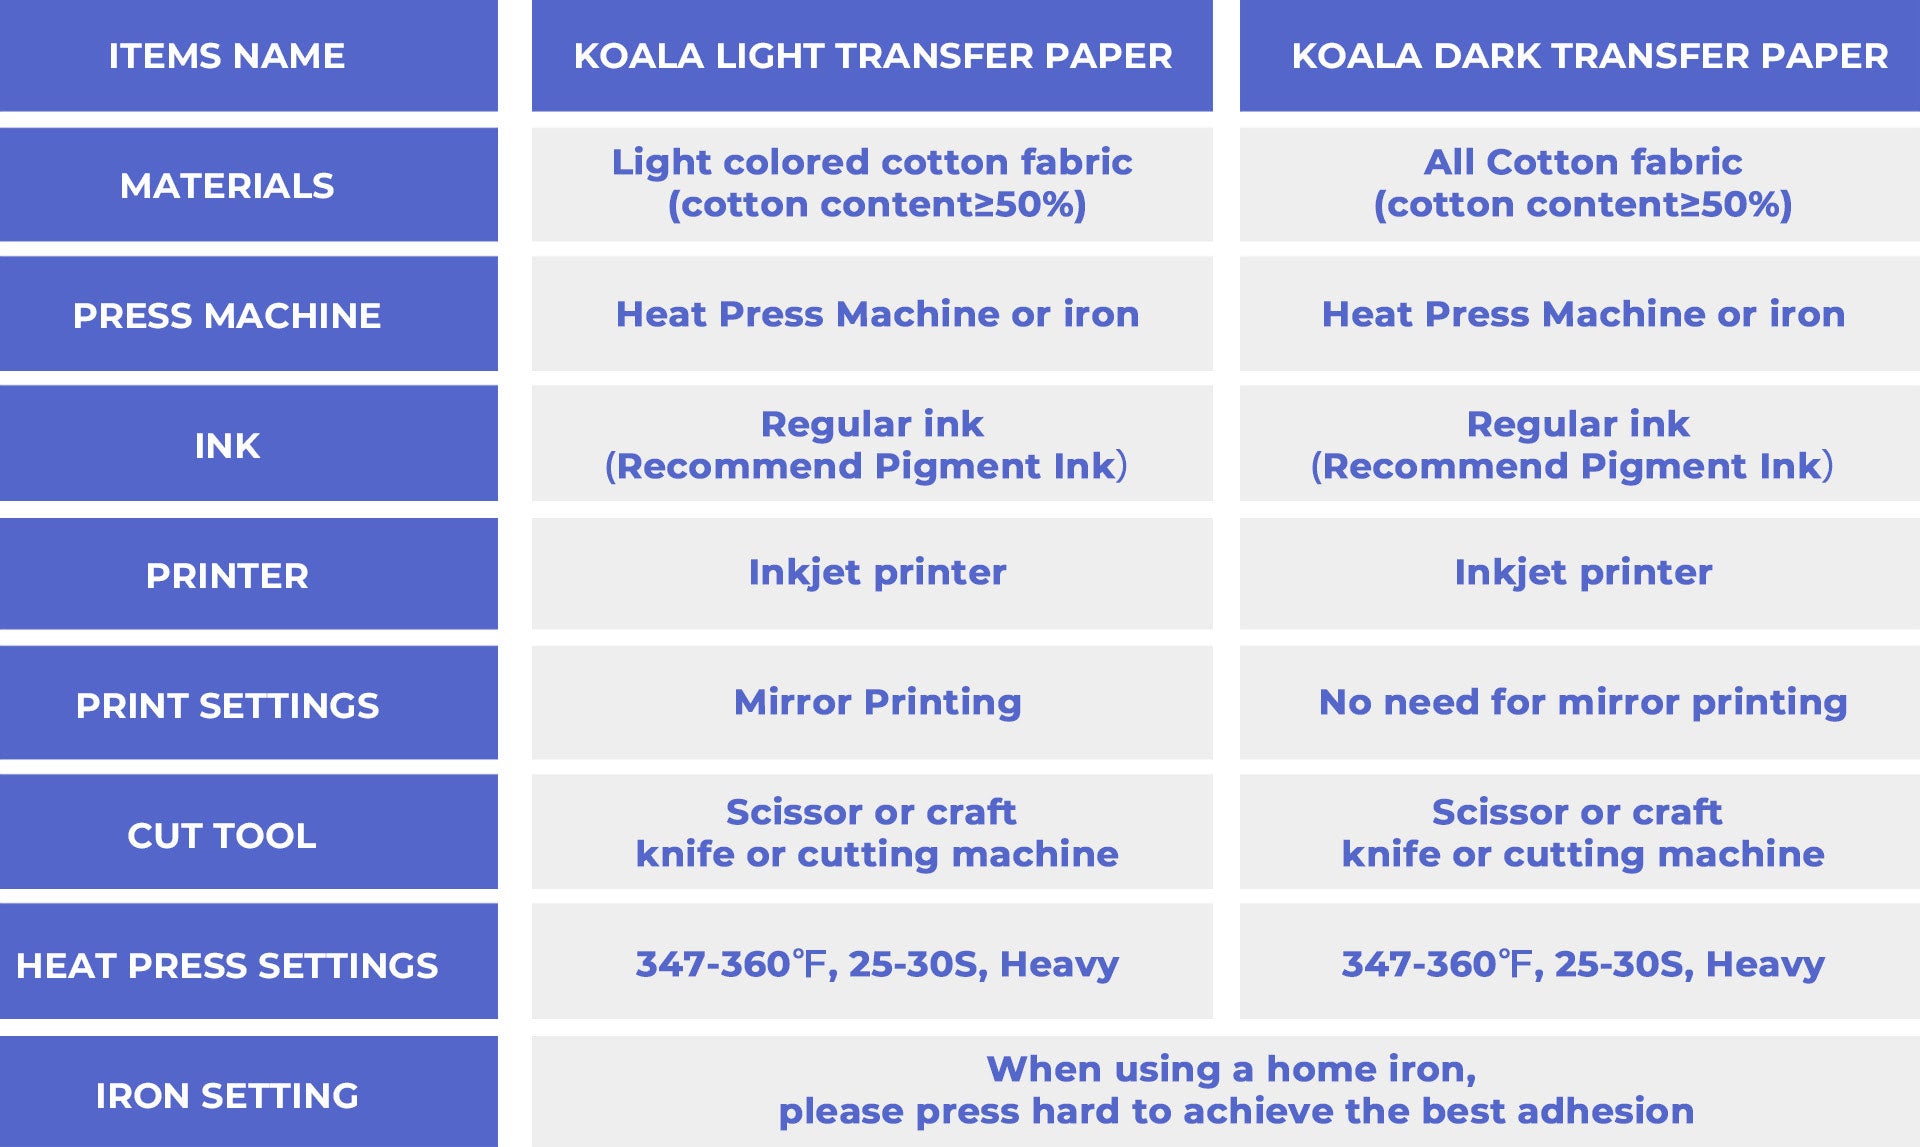 Koala Inkjet Printable Heat Transfer Vinyl Paper, Dark Transfer Paper for Dark or Light Color Cotton T-Shirt 10 Sheets, Size: 8.5x11 inch (Letter Size